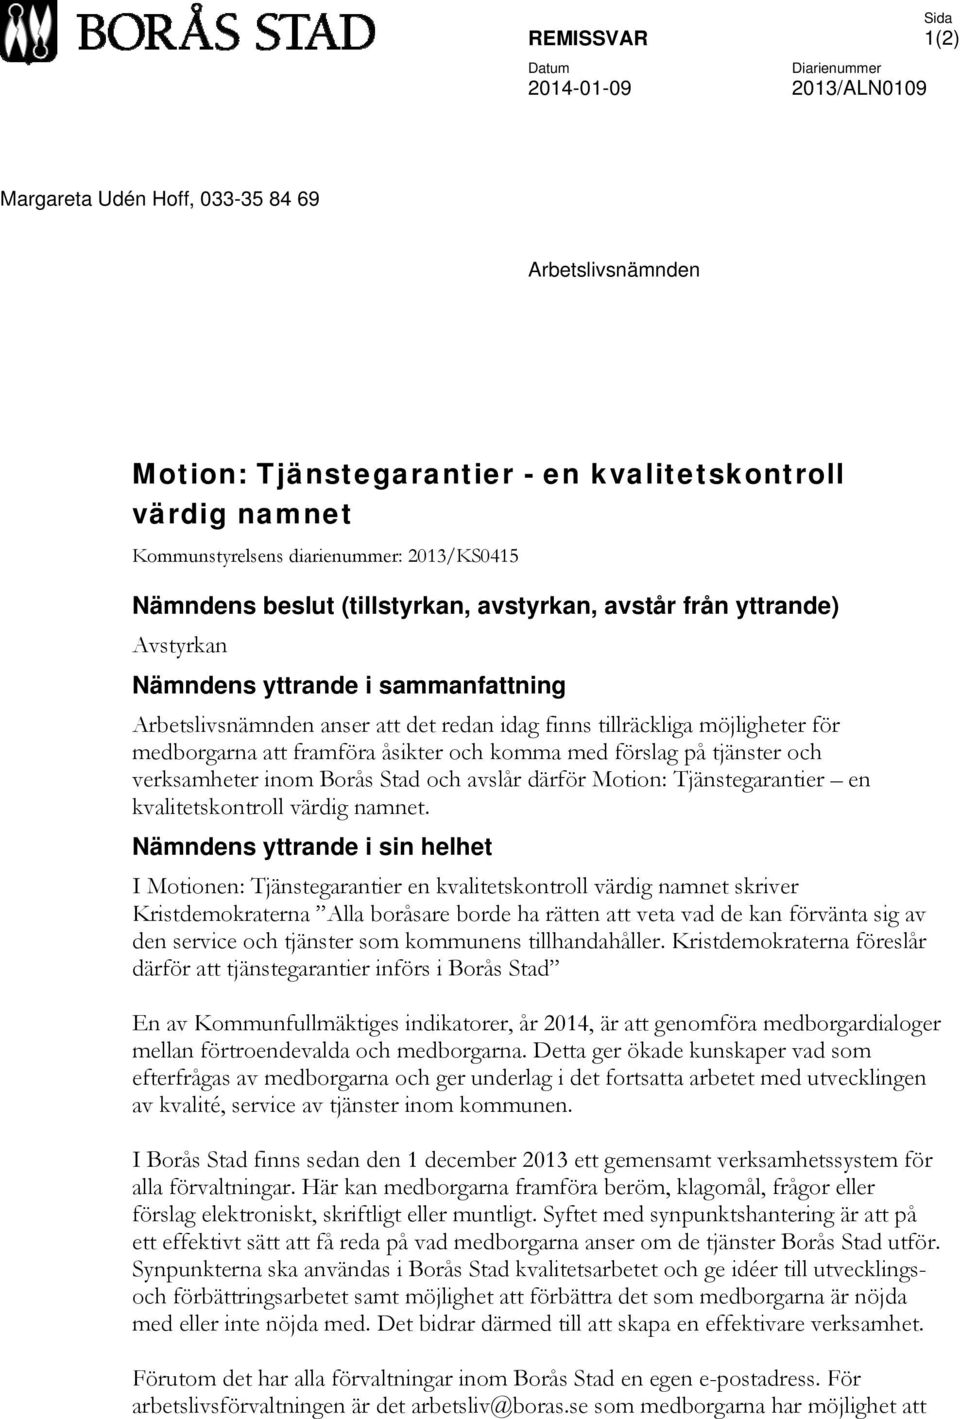 möjligheter för medborgarna att framföra åsikter och komma med förslag på tjänster och verksamheter inom Borås Stad och avslår därför Motion: Tjänstegarantier en kvalitetskontroll värdig namnet.